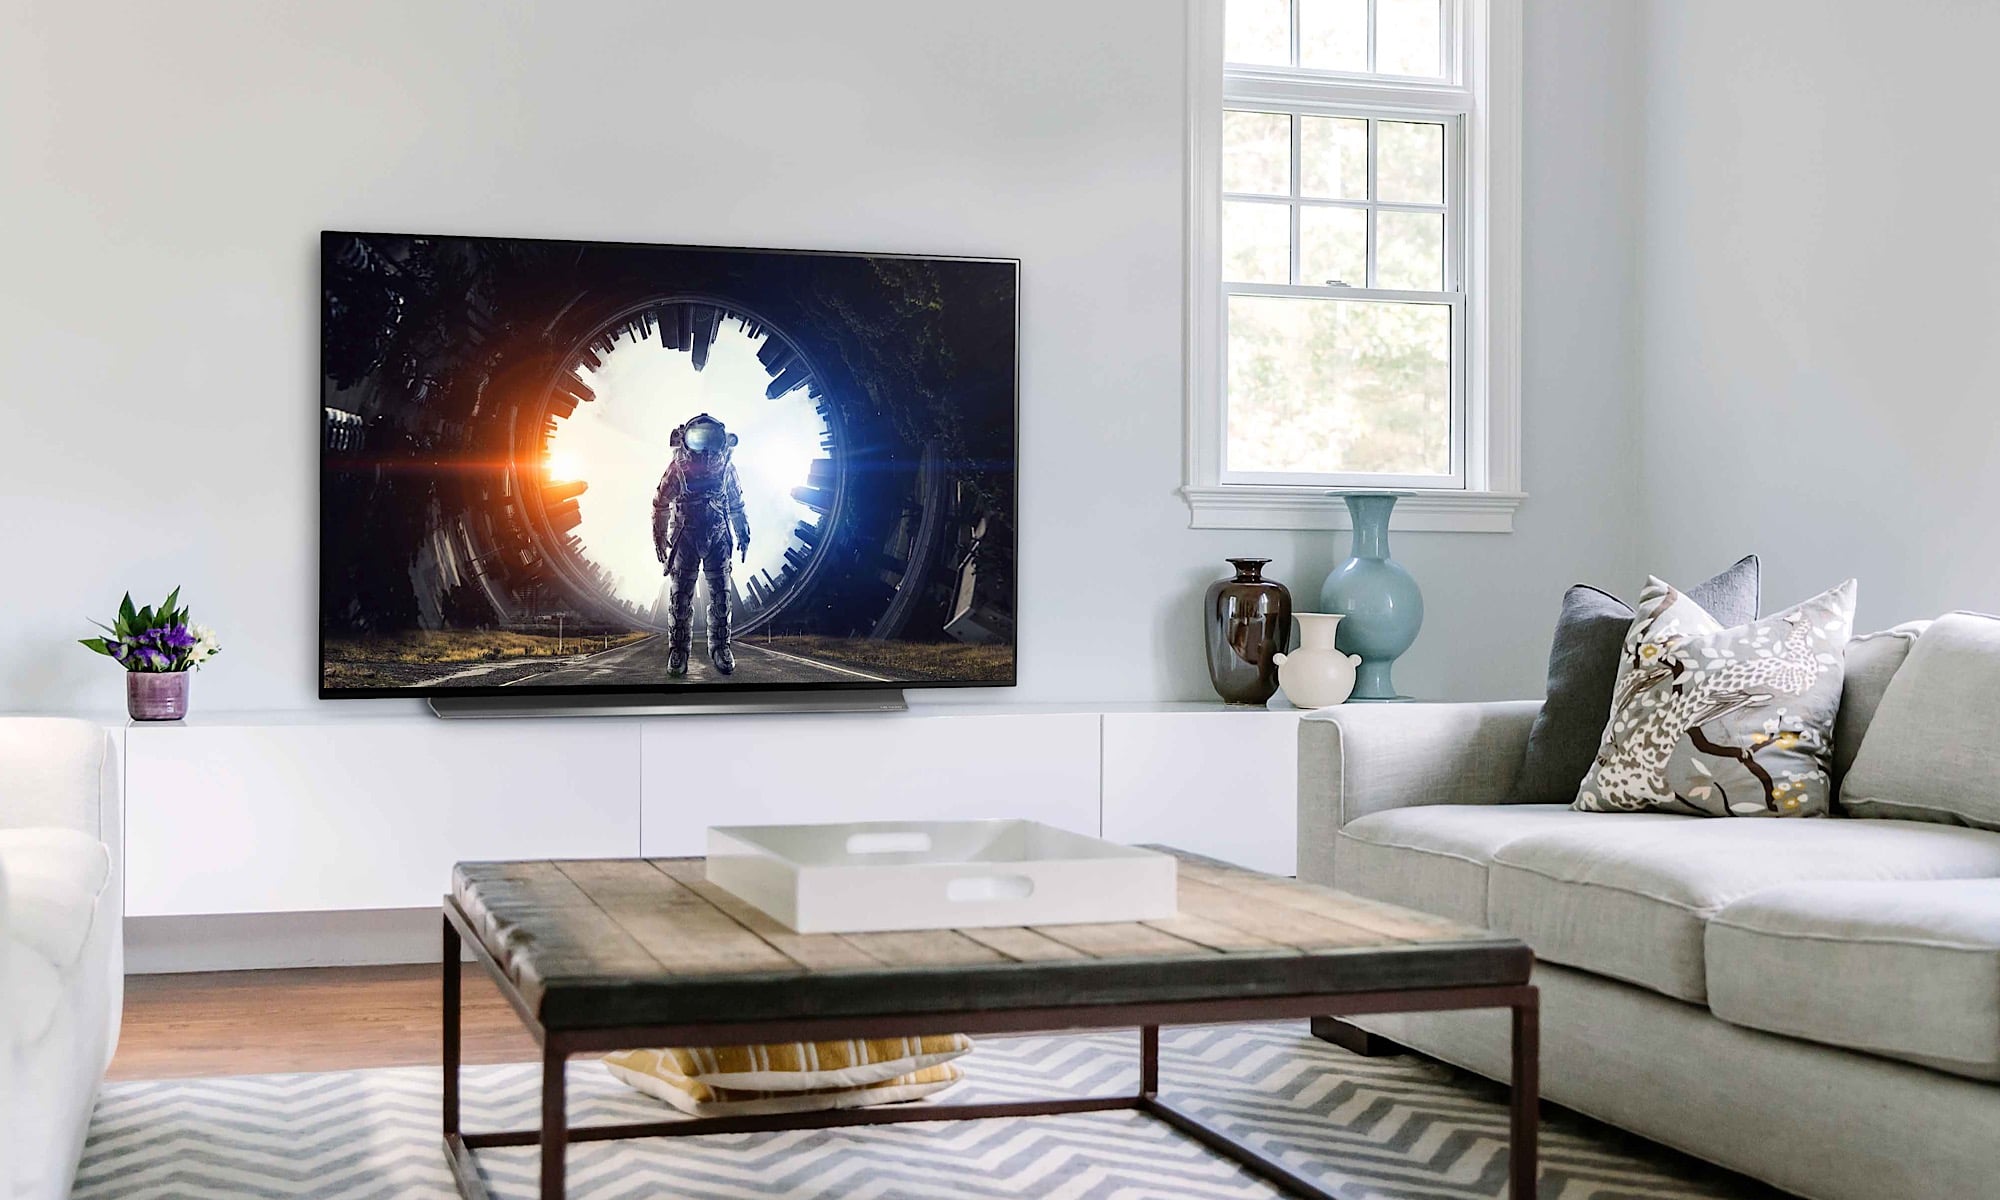 LG's C-series OLED TV in 2019